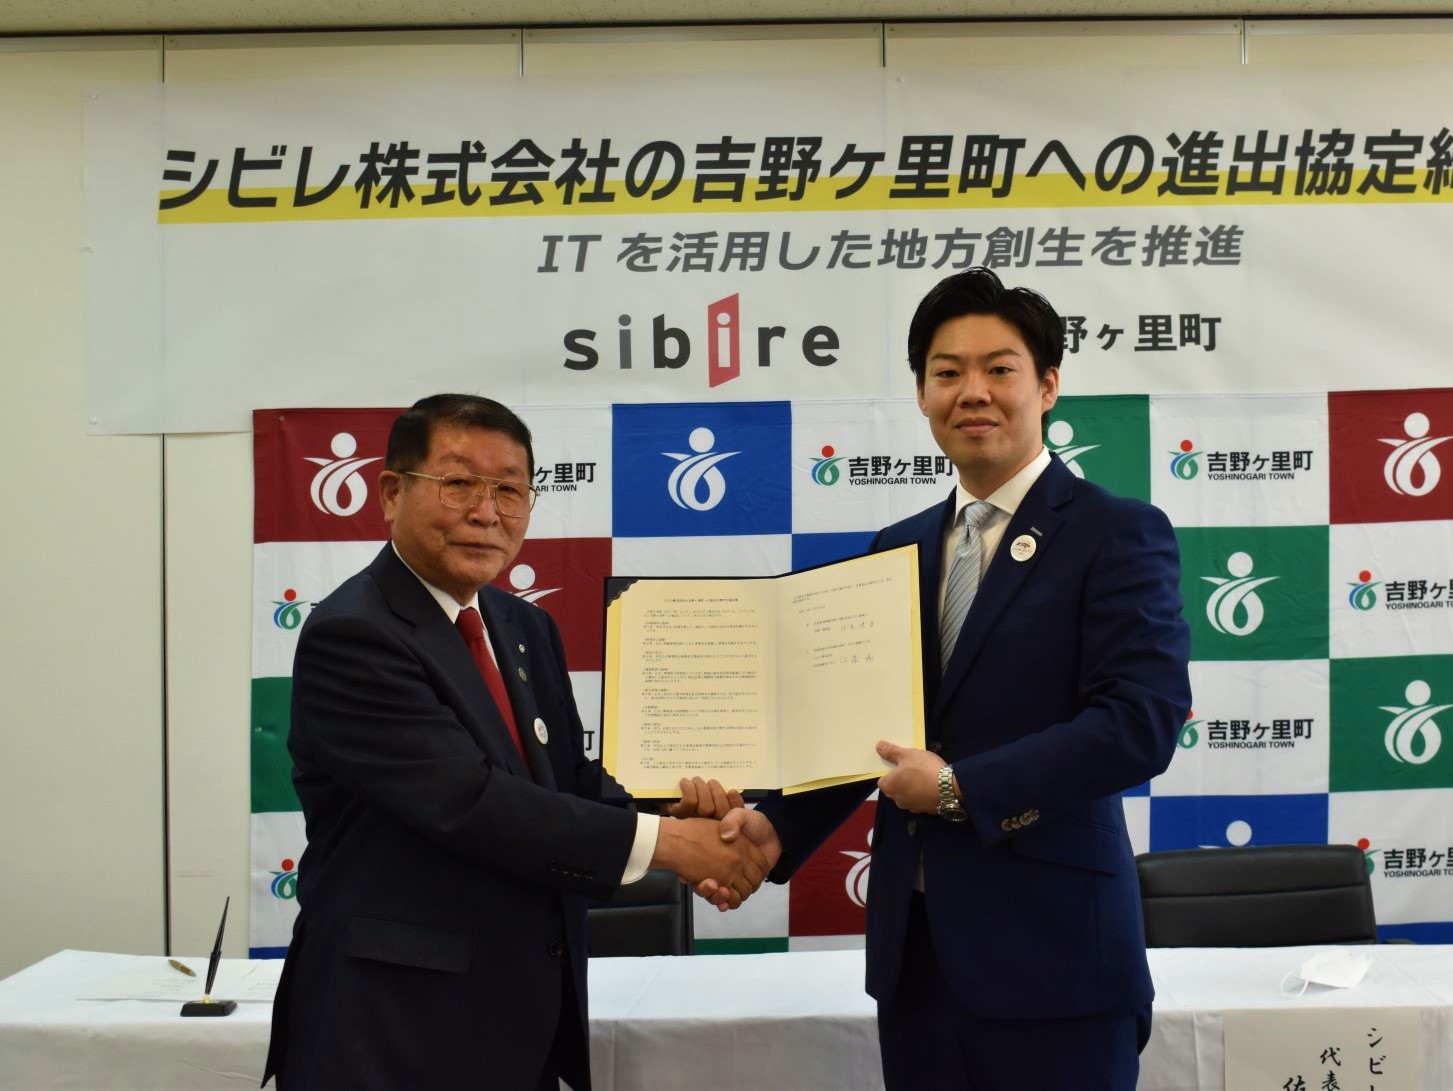 シビレ株式会社と吉野ヶ里町が進出協定を締結されました